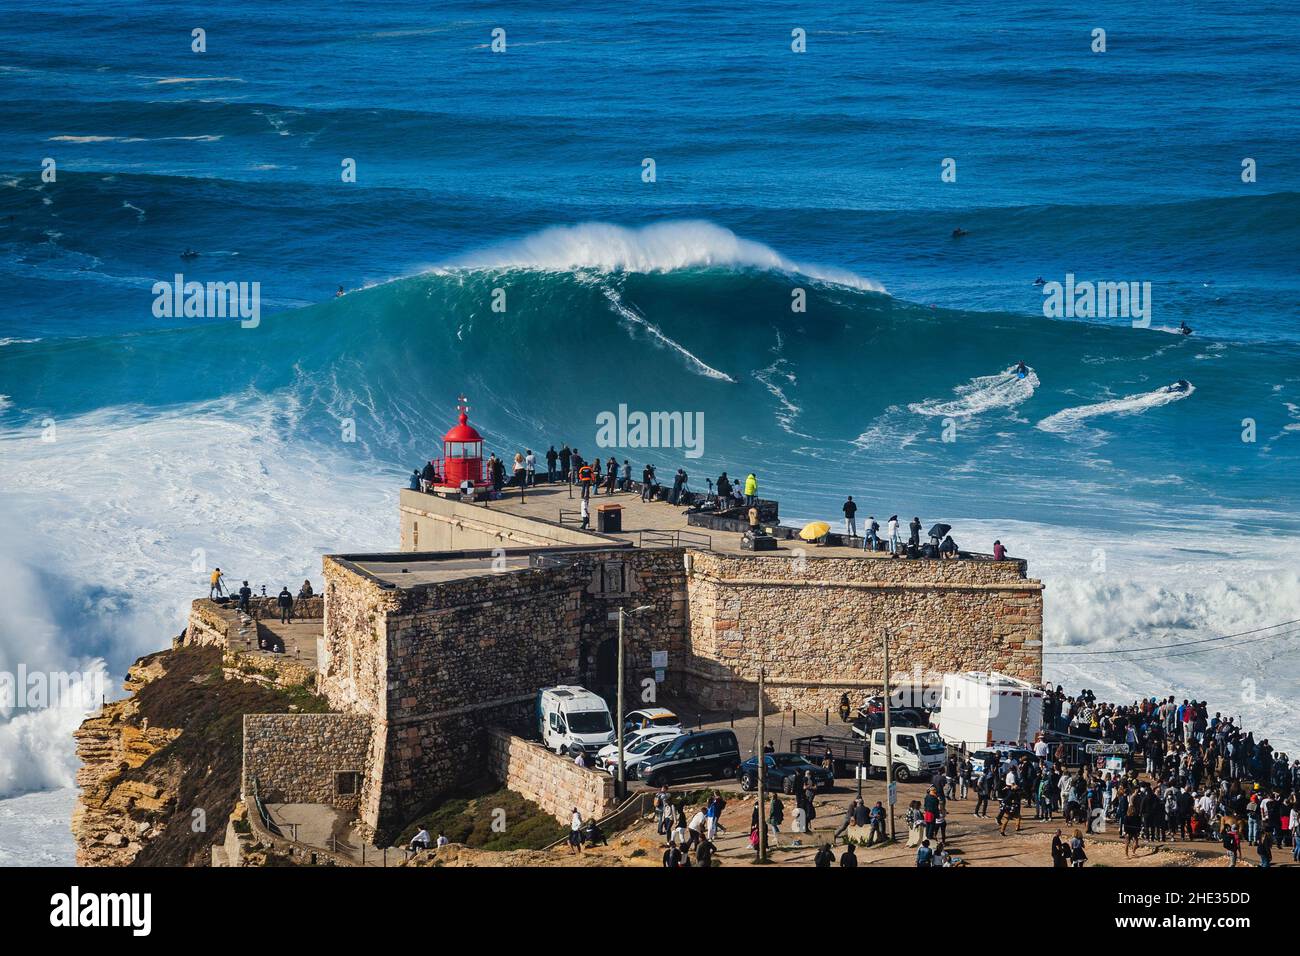 Surfista che cavalca un'onda enorme vicino al faro di Sao Miguel Arcanjo a Nazare, Portogallo. Nazare è noto per avere le onde più grandi in t Foto Stock